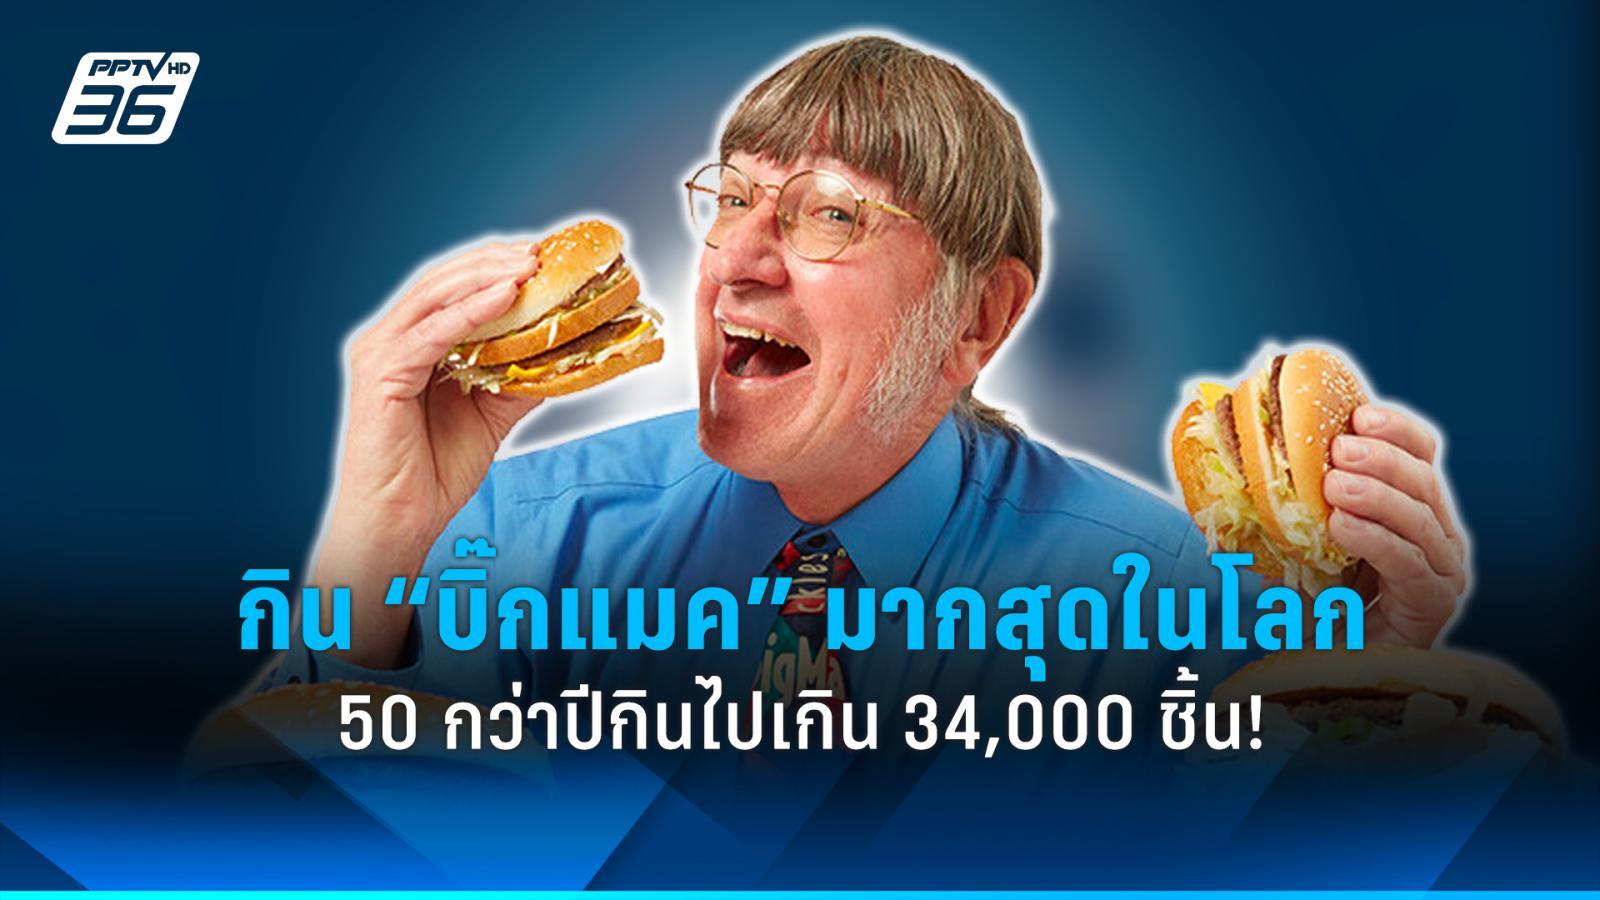 ชายกิน “บิ๊กแมค” มากที่สุดในโลก 50 กว่าปีกินไปเกิน 34,000 ชิ้น!